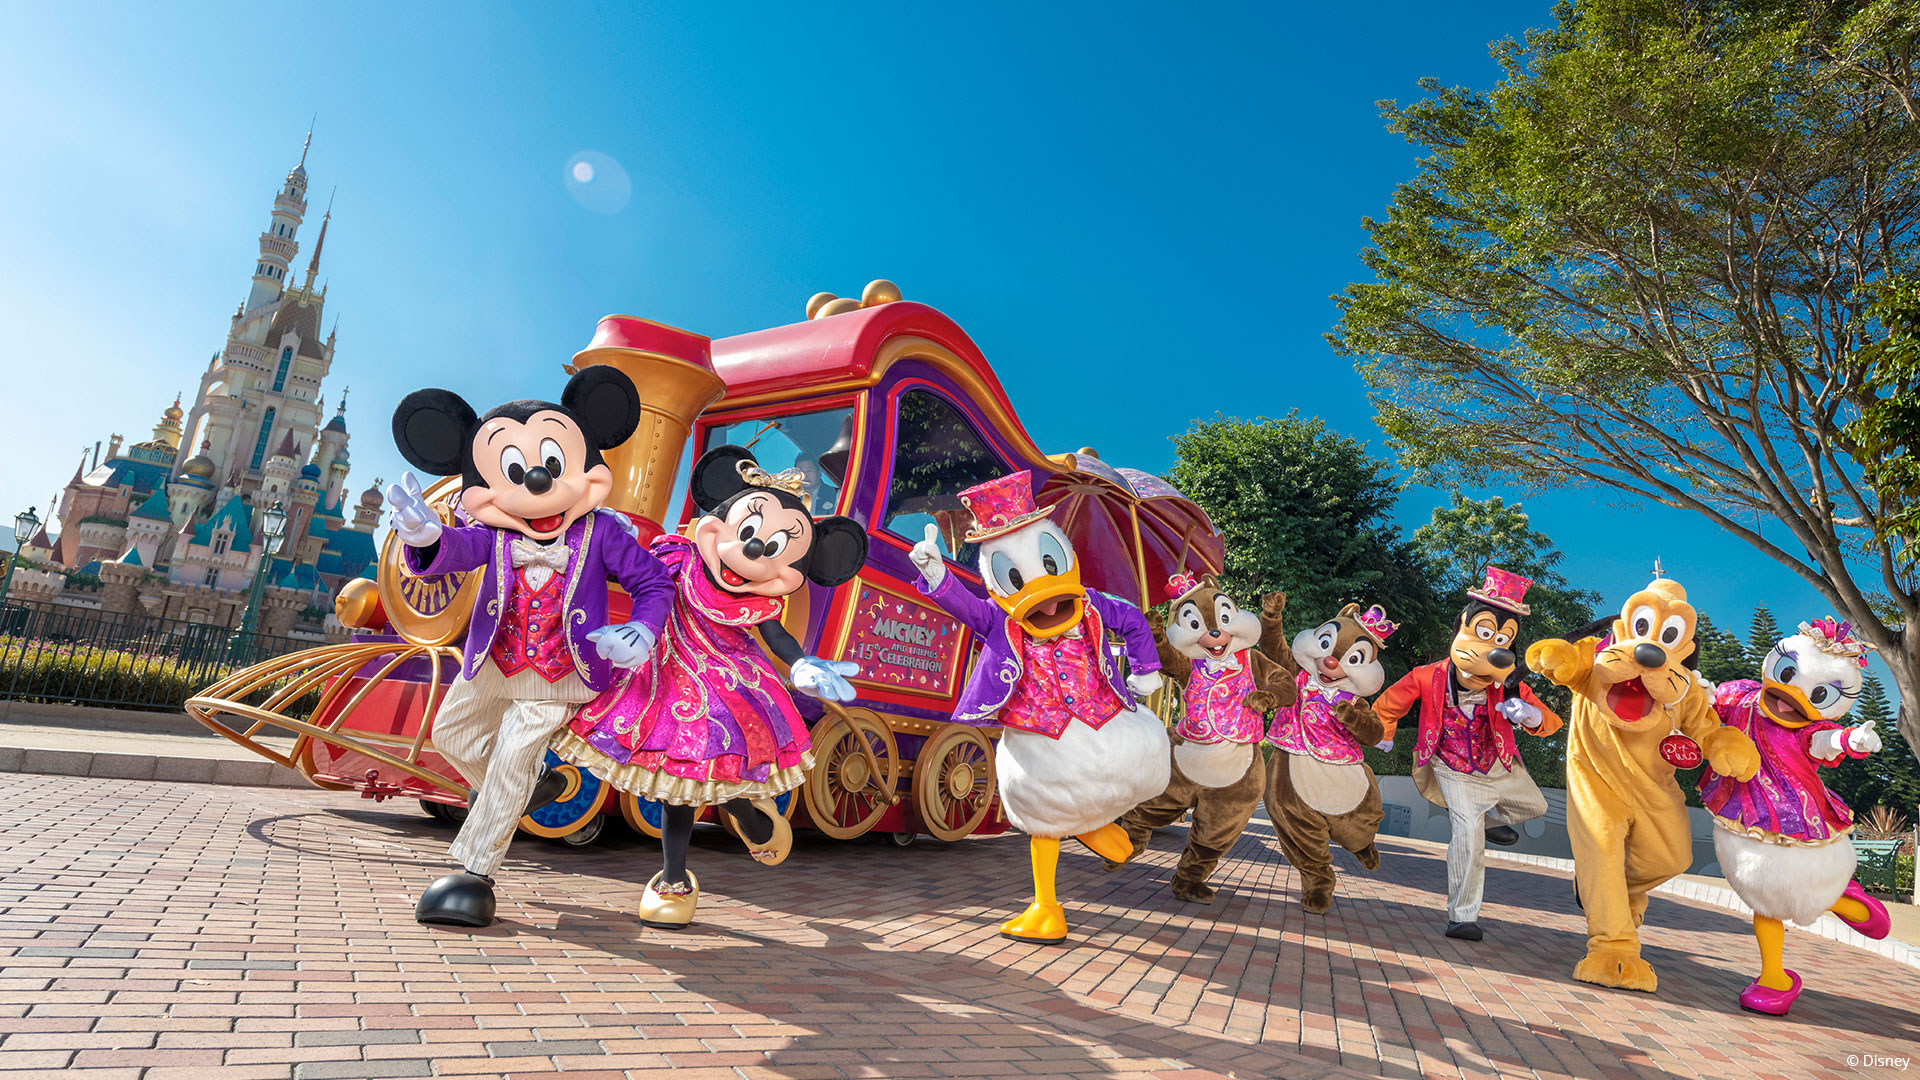 Panduan utama untuk Hong Kong Disneyland | Hong Kong Tourism Board